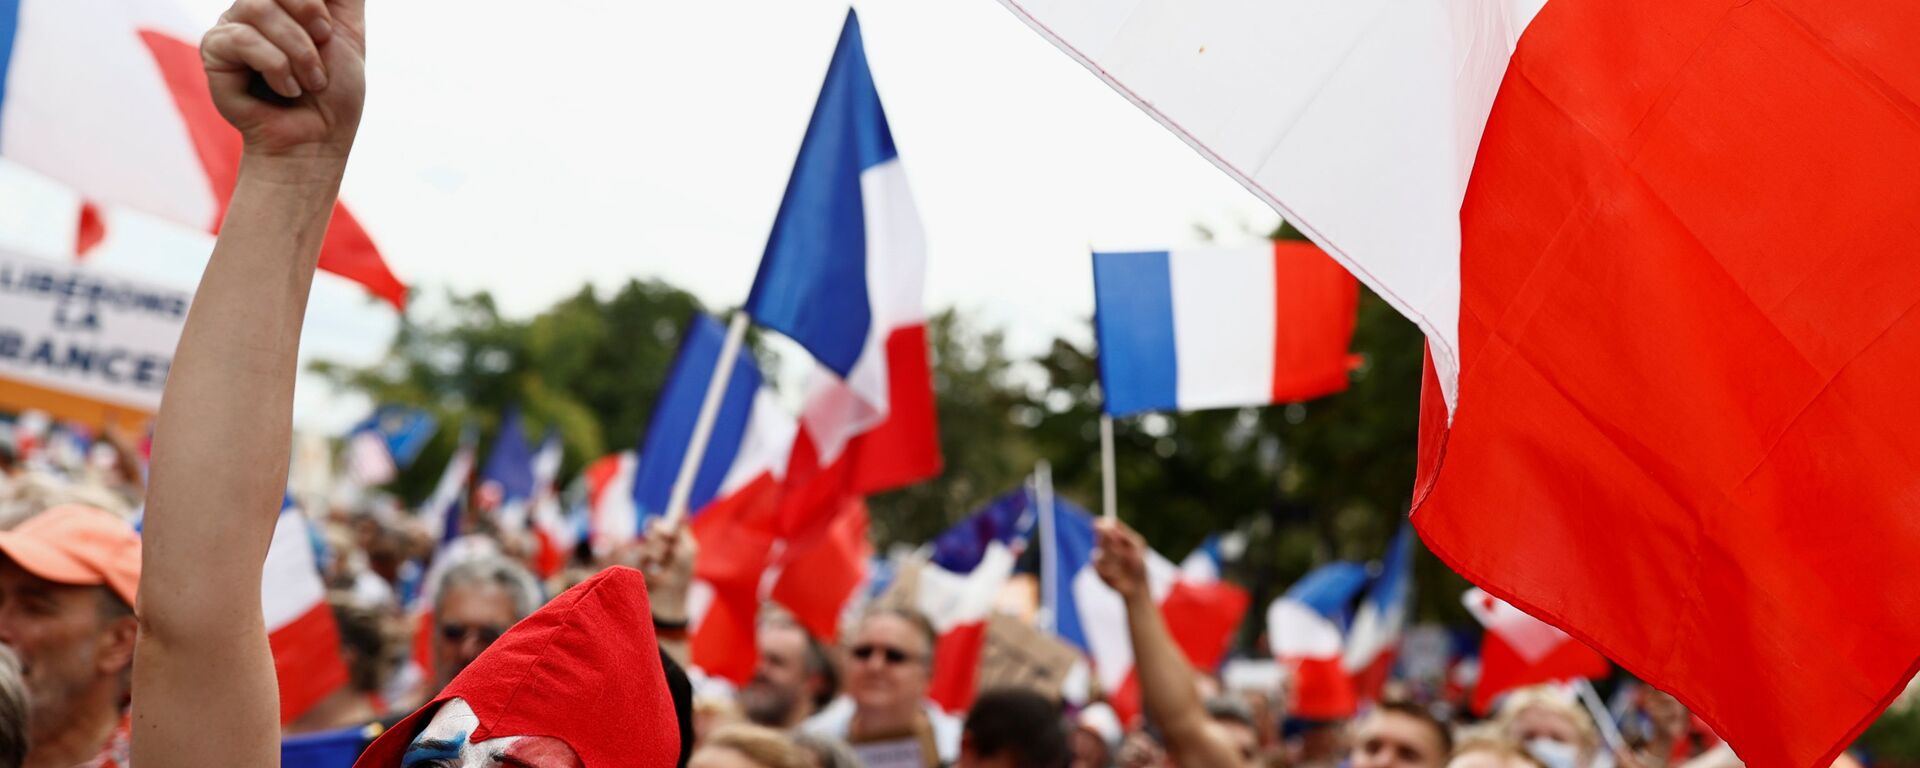 Des drapeaux français brandis lors d'une manifestation anti-pass sanitaire à Paris, le 21 août  2021 - Sputnik Afrique, 1920, 16.01.2022